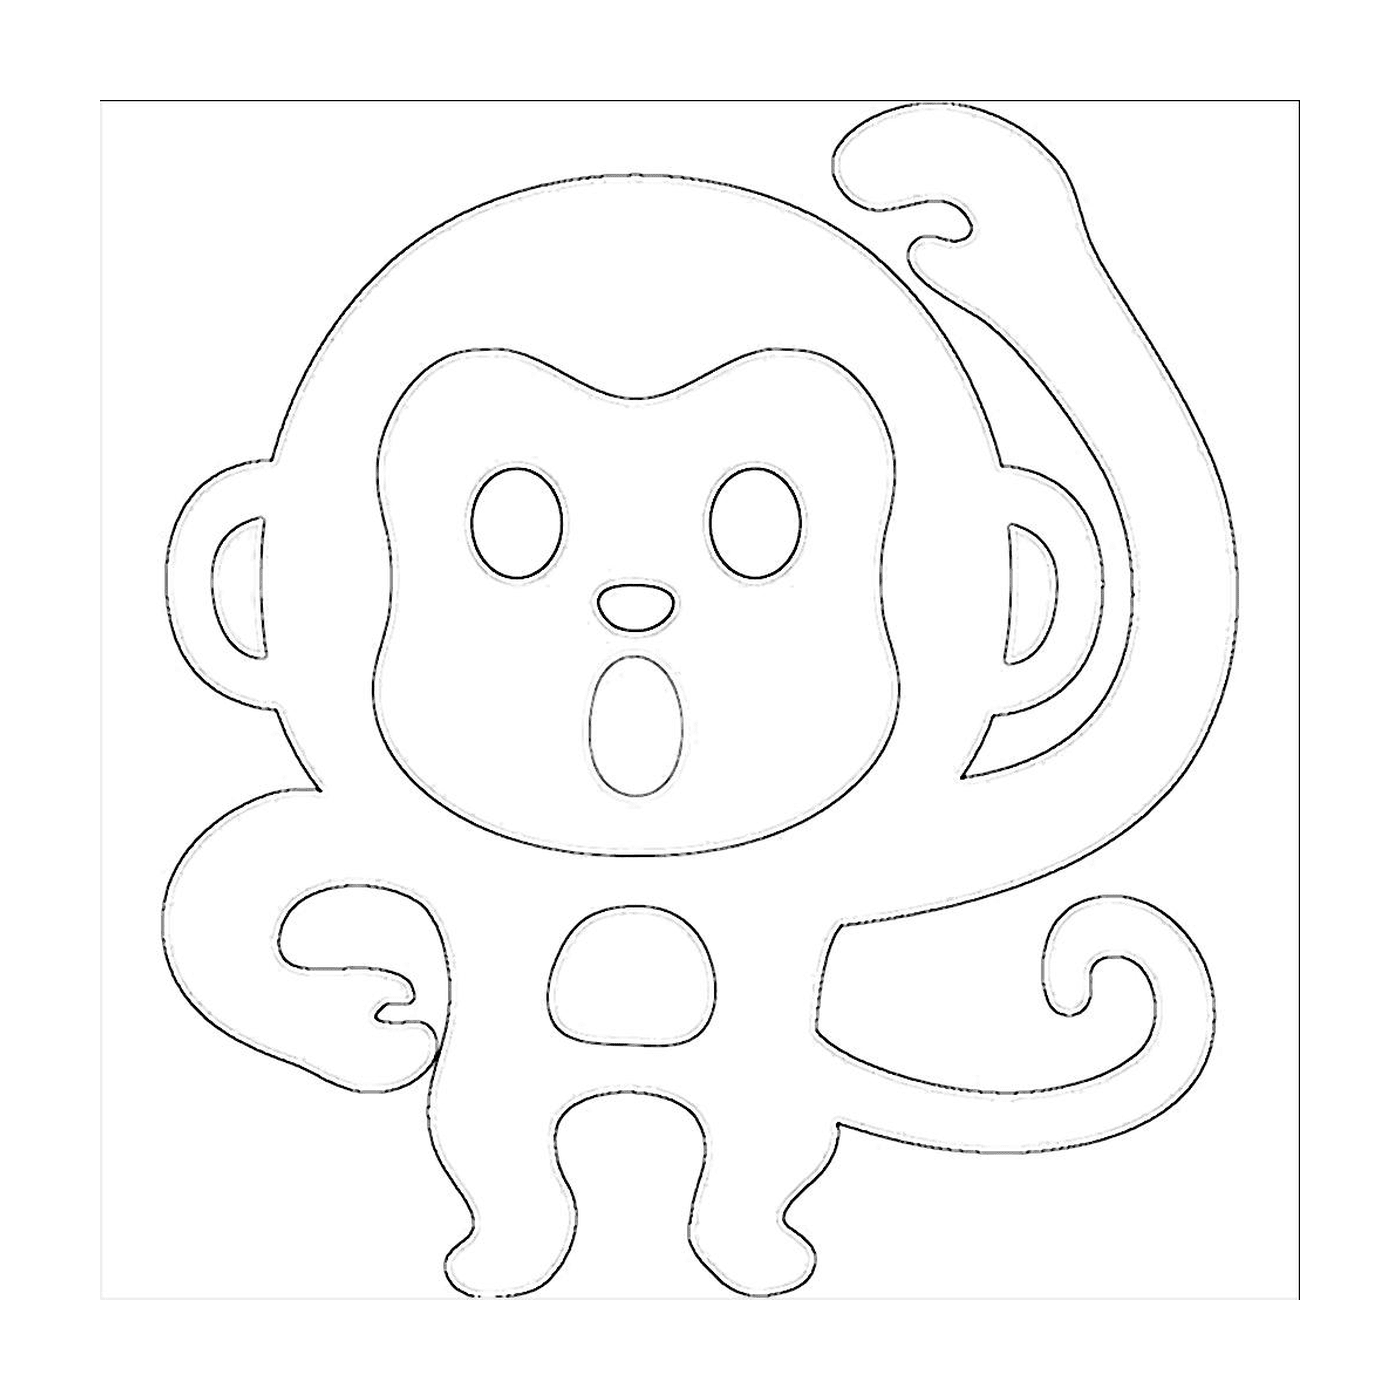  Ein zeichnerischer Affe 